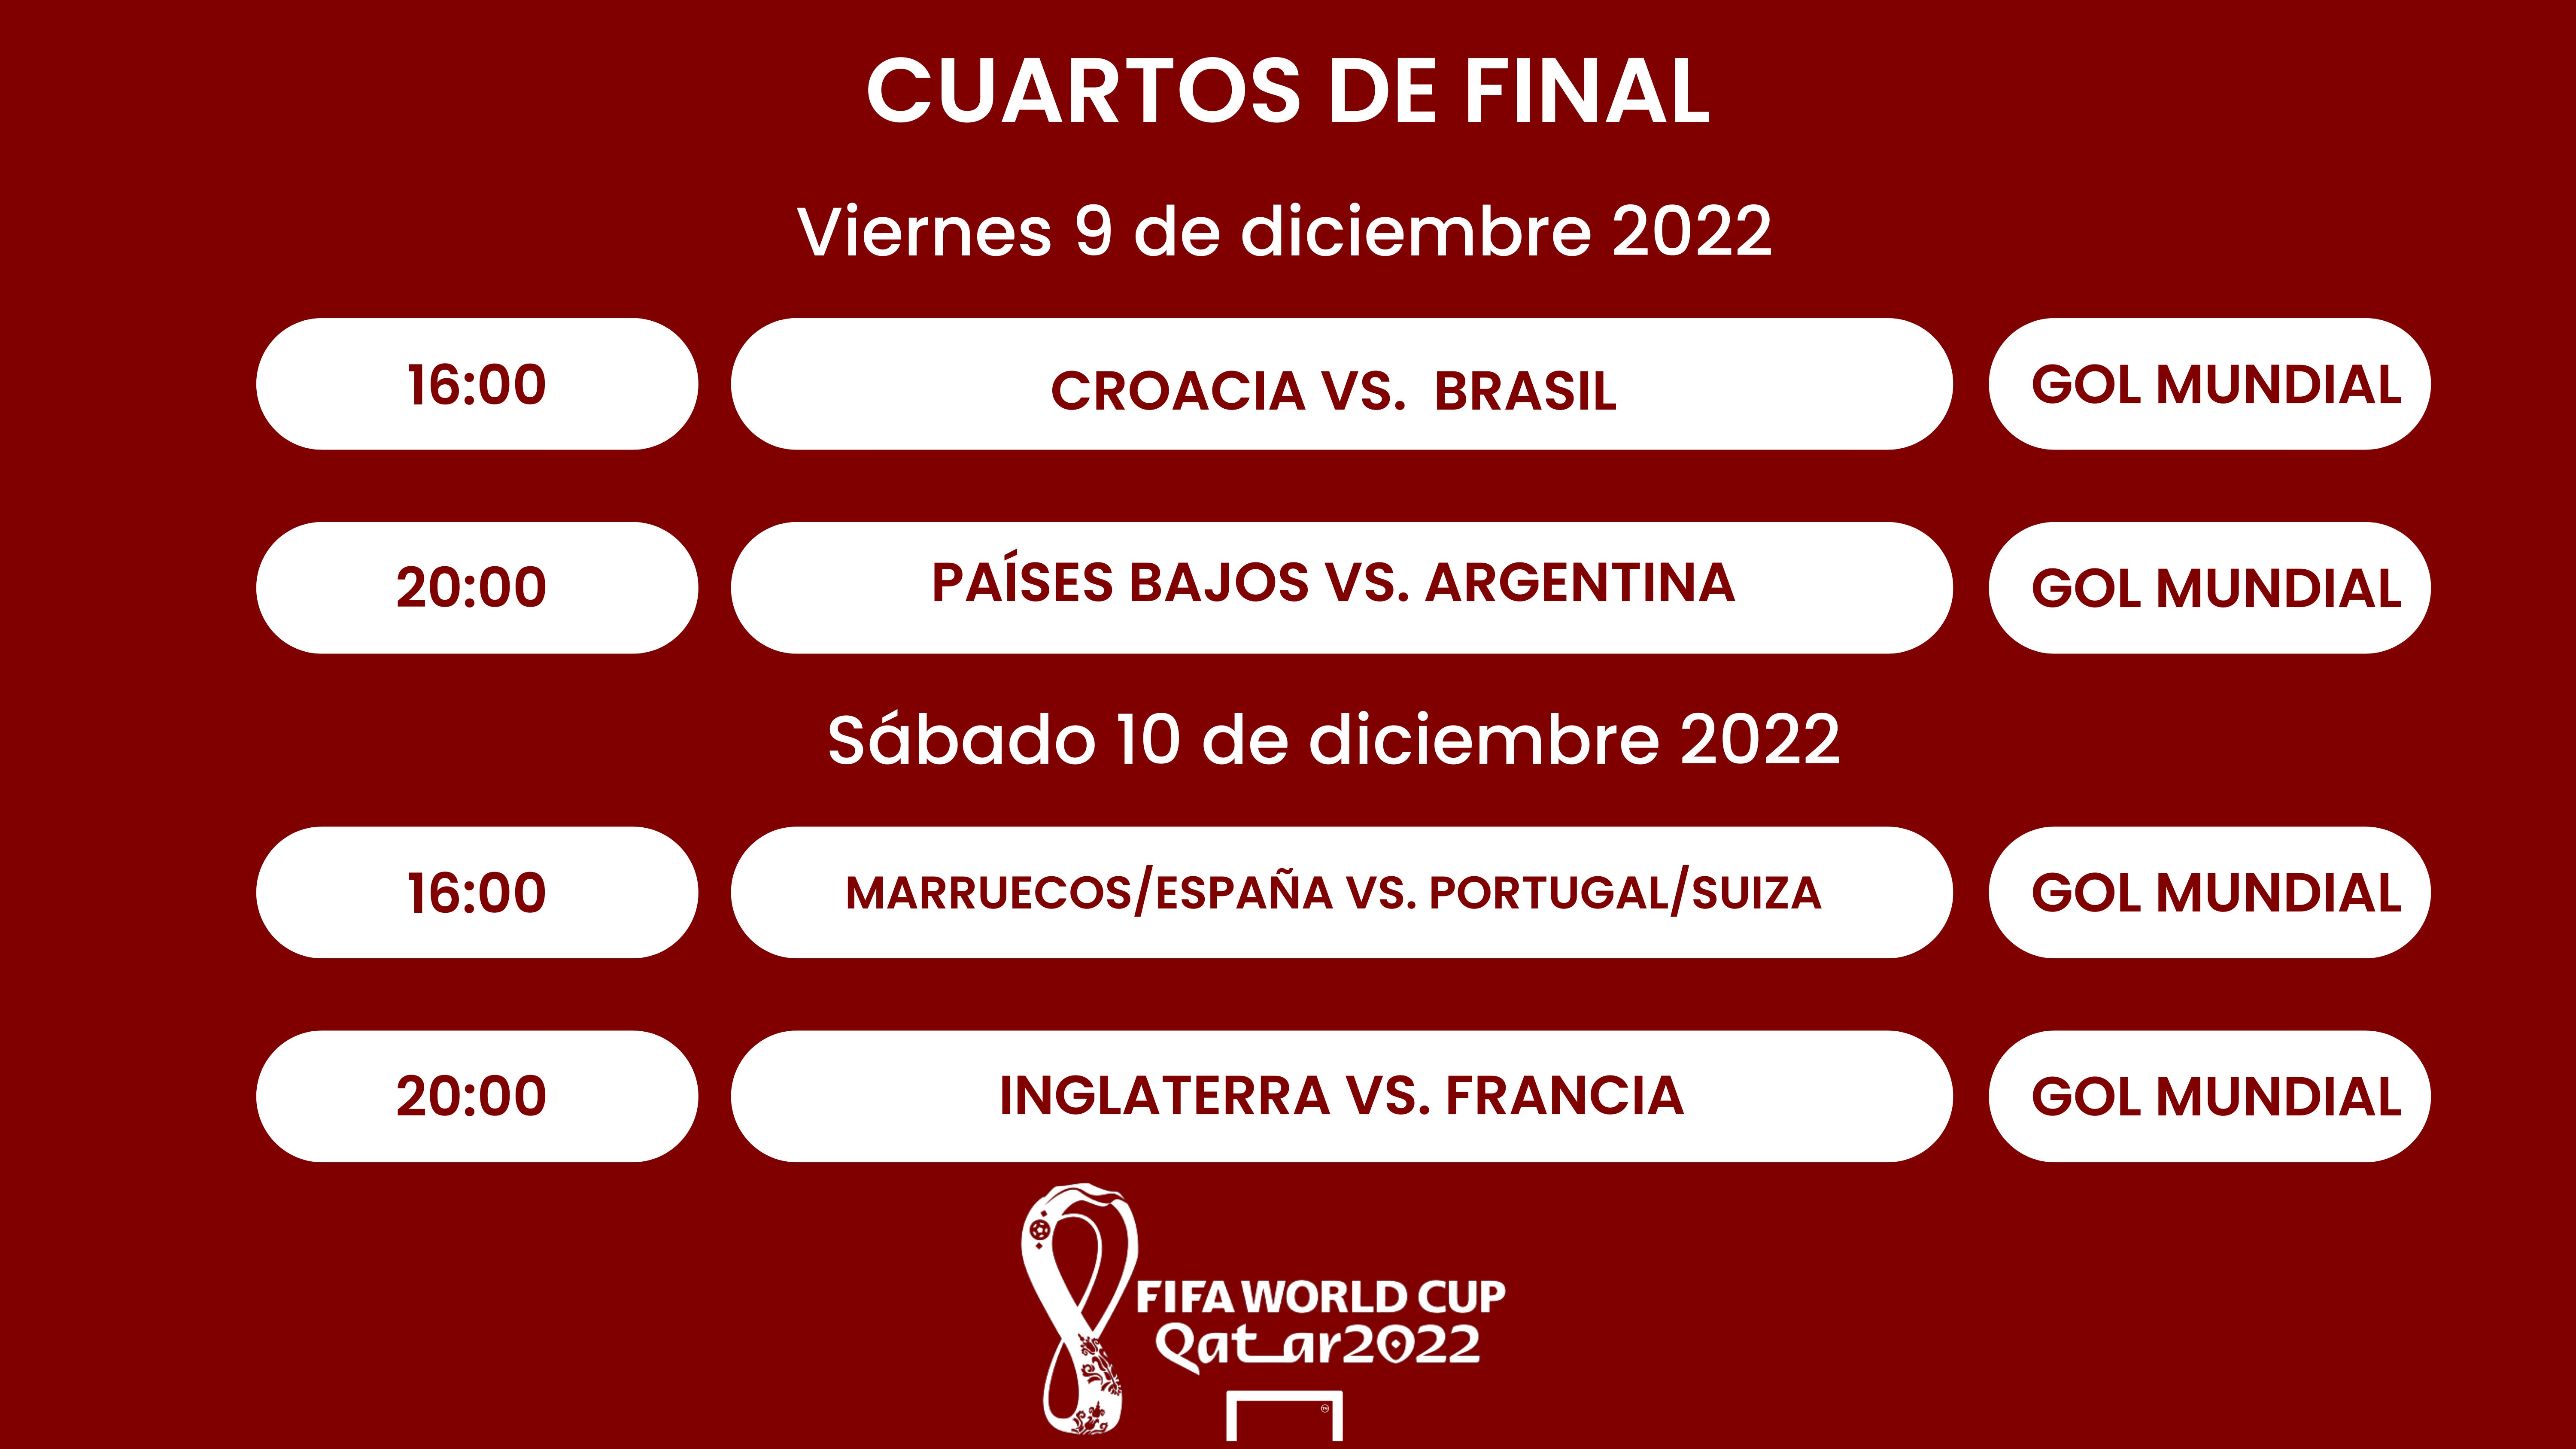 Cuartos final del Mundial Qatar 2022: Cuándo son, selecciones partidos, fechas, horarios resultados | Goal.com Espana